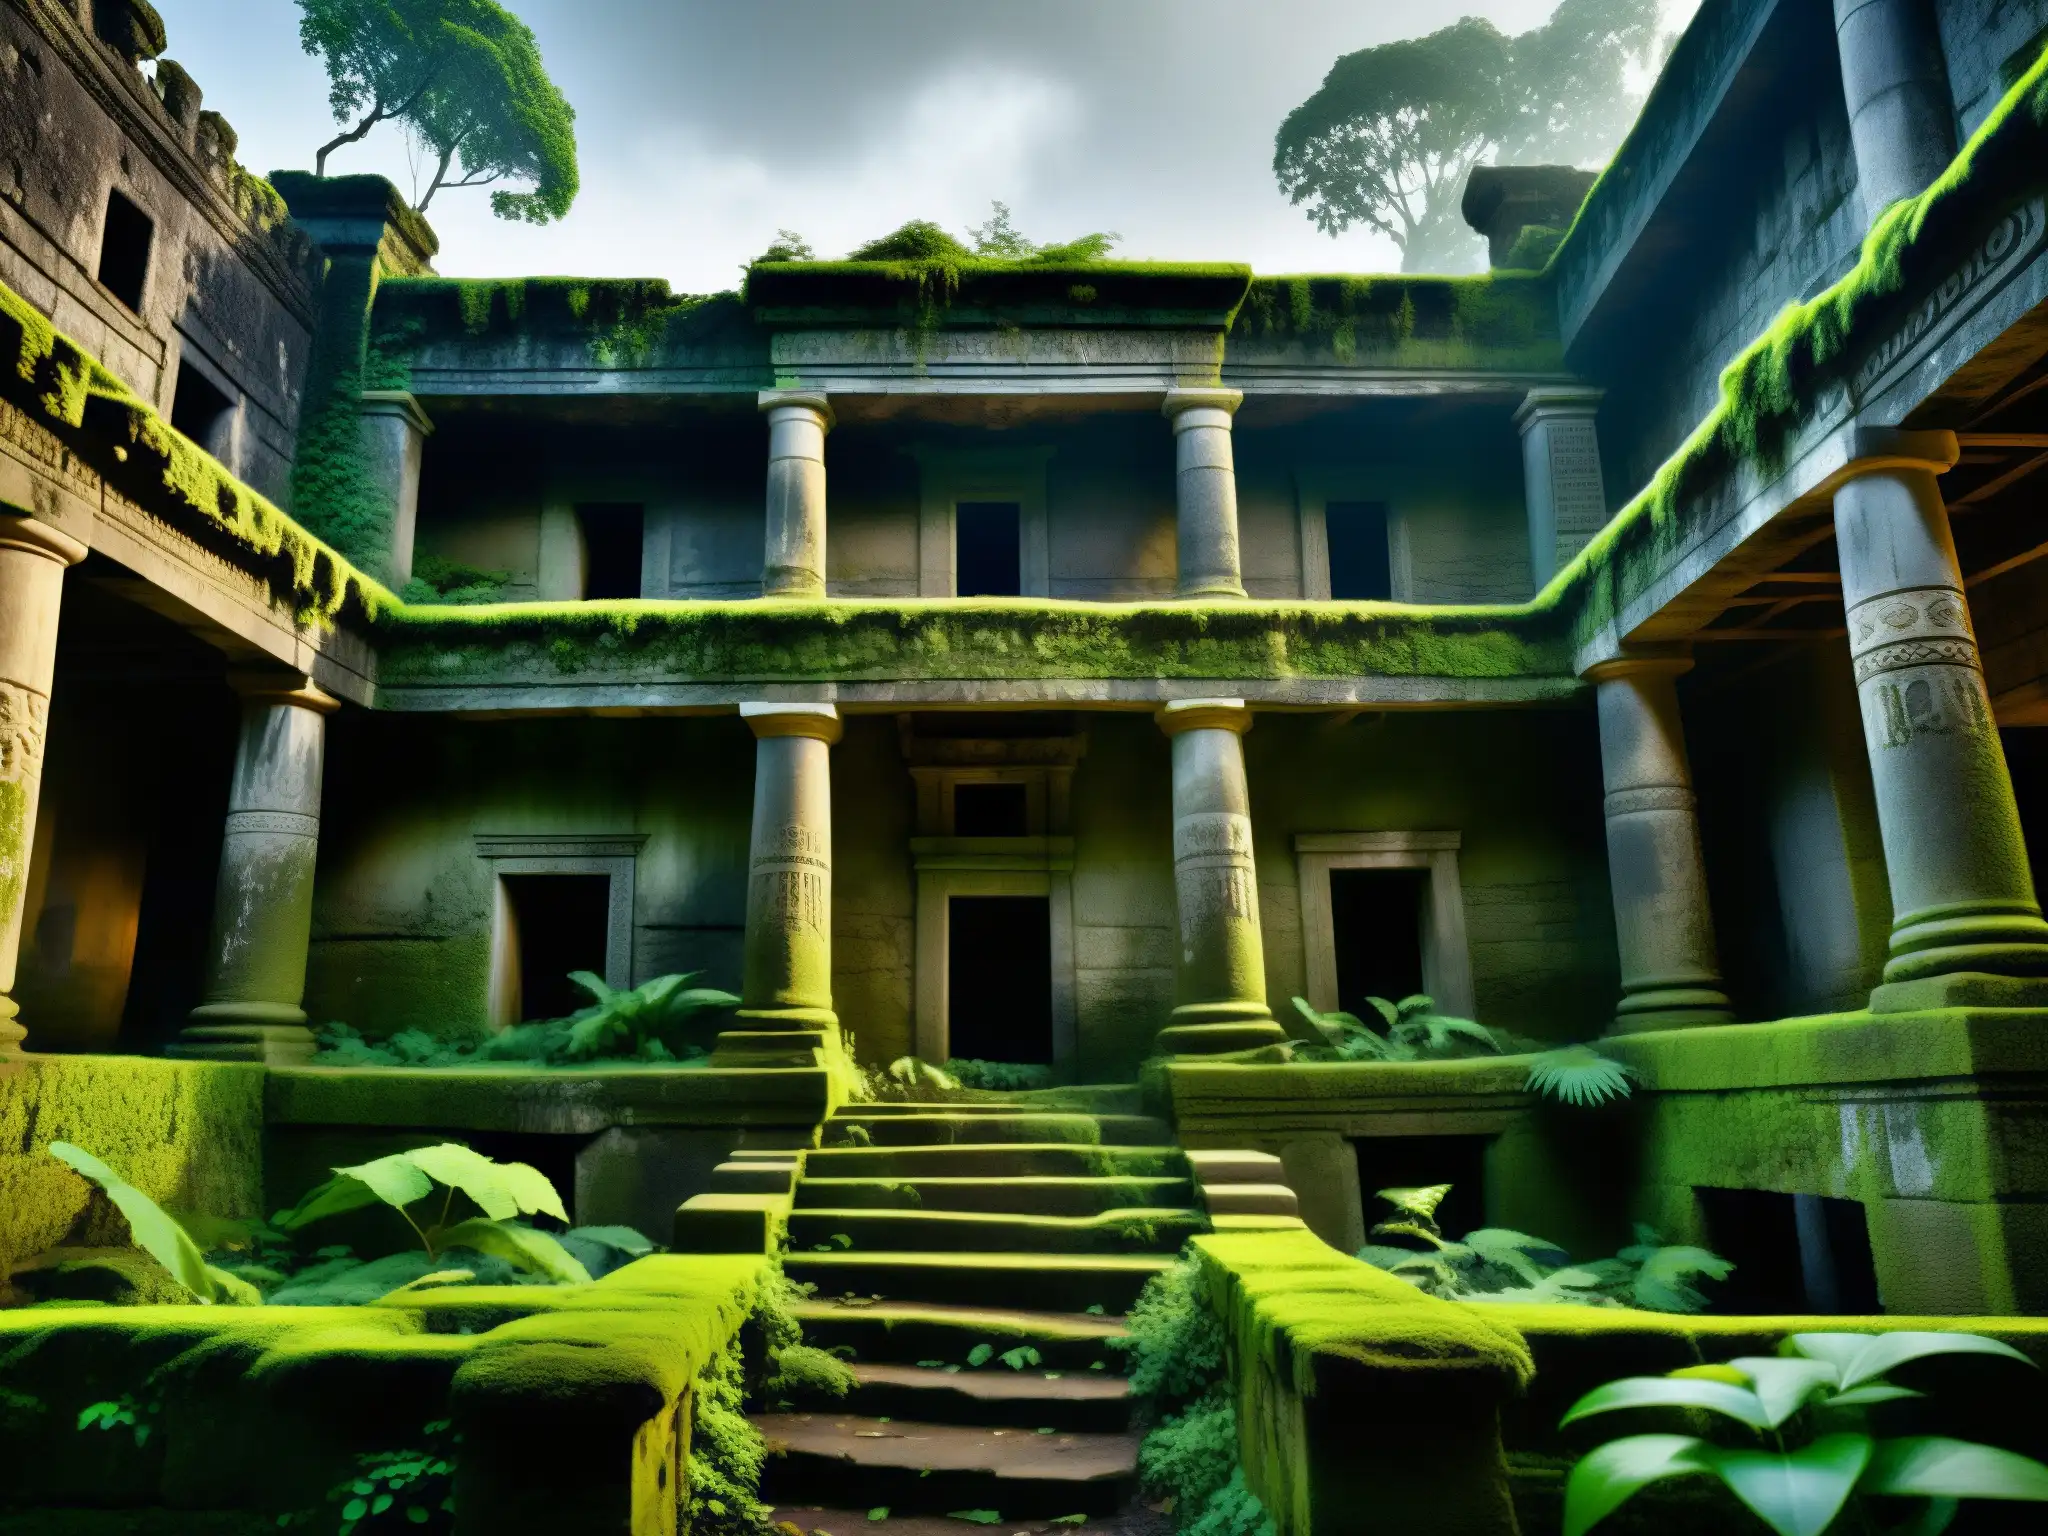 Misteriosa selva con ruinas antiguas entre la densa niebla, evocando mitos y leyendas urbanas reales